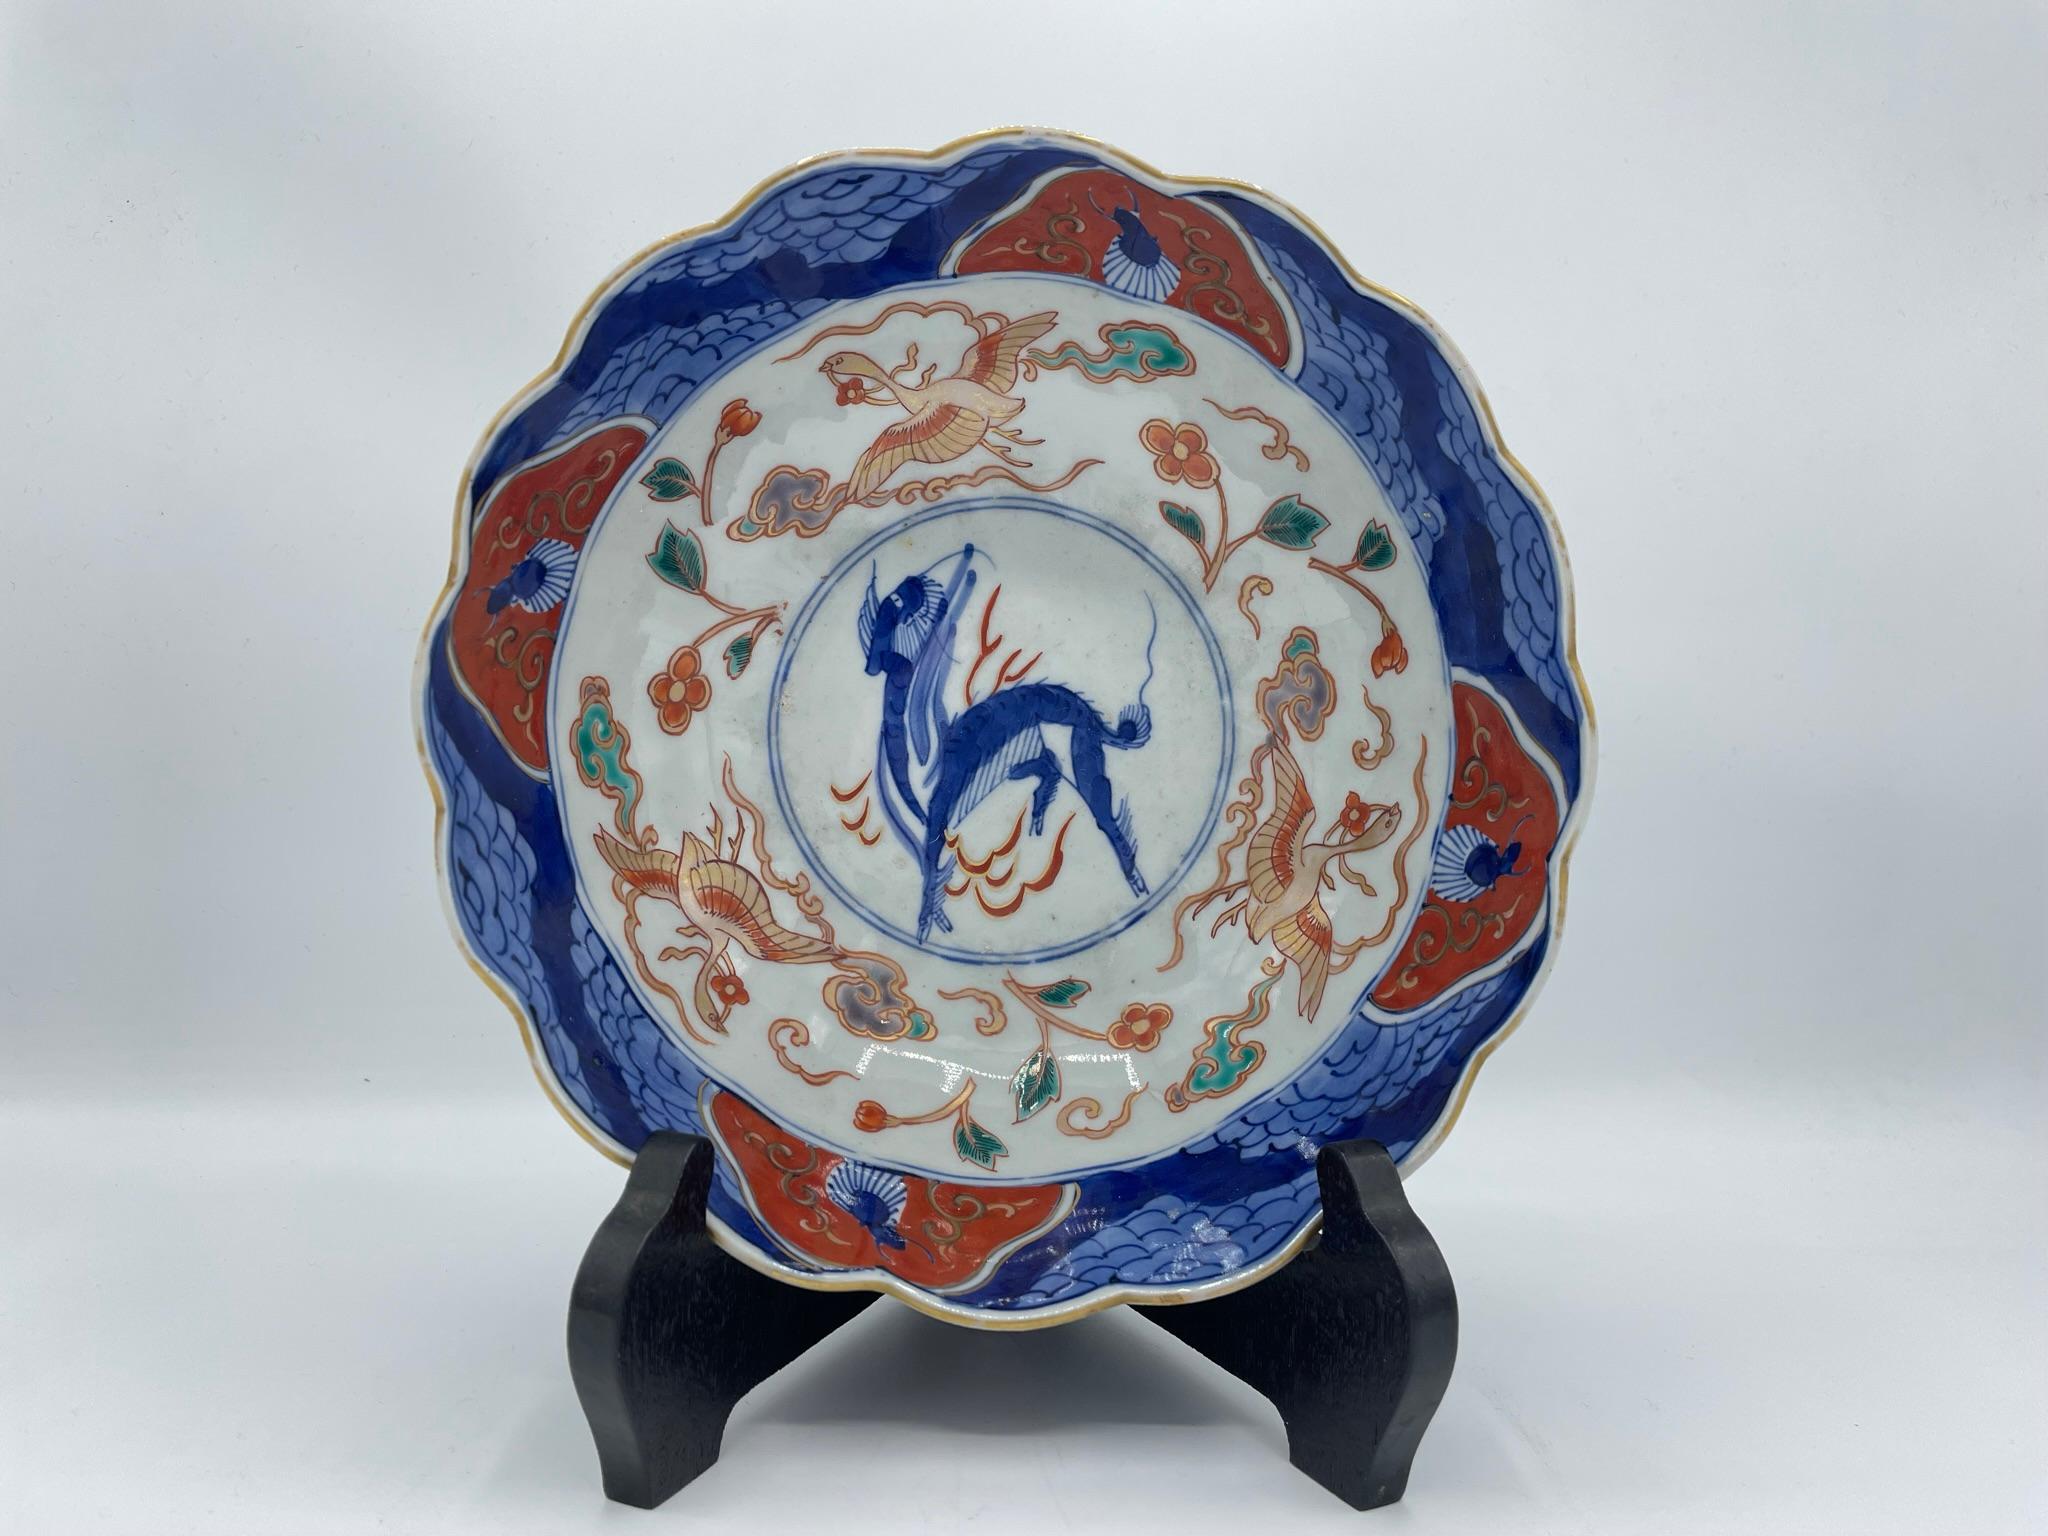 Il s'agit d'un bol de service fabriqué vers 1900 (à l'ère Meiji). Il est fabriqué avec le style Imari-yaki (Imari ware). 
Vous pouvez l'utiliser comme bol de service mais aussi comme décoration.

Dimensions :
18,5 cm × 18,5 cm × H 8 cm


La